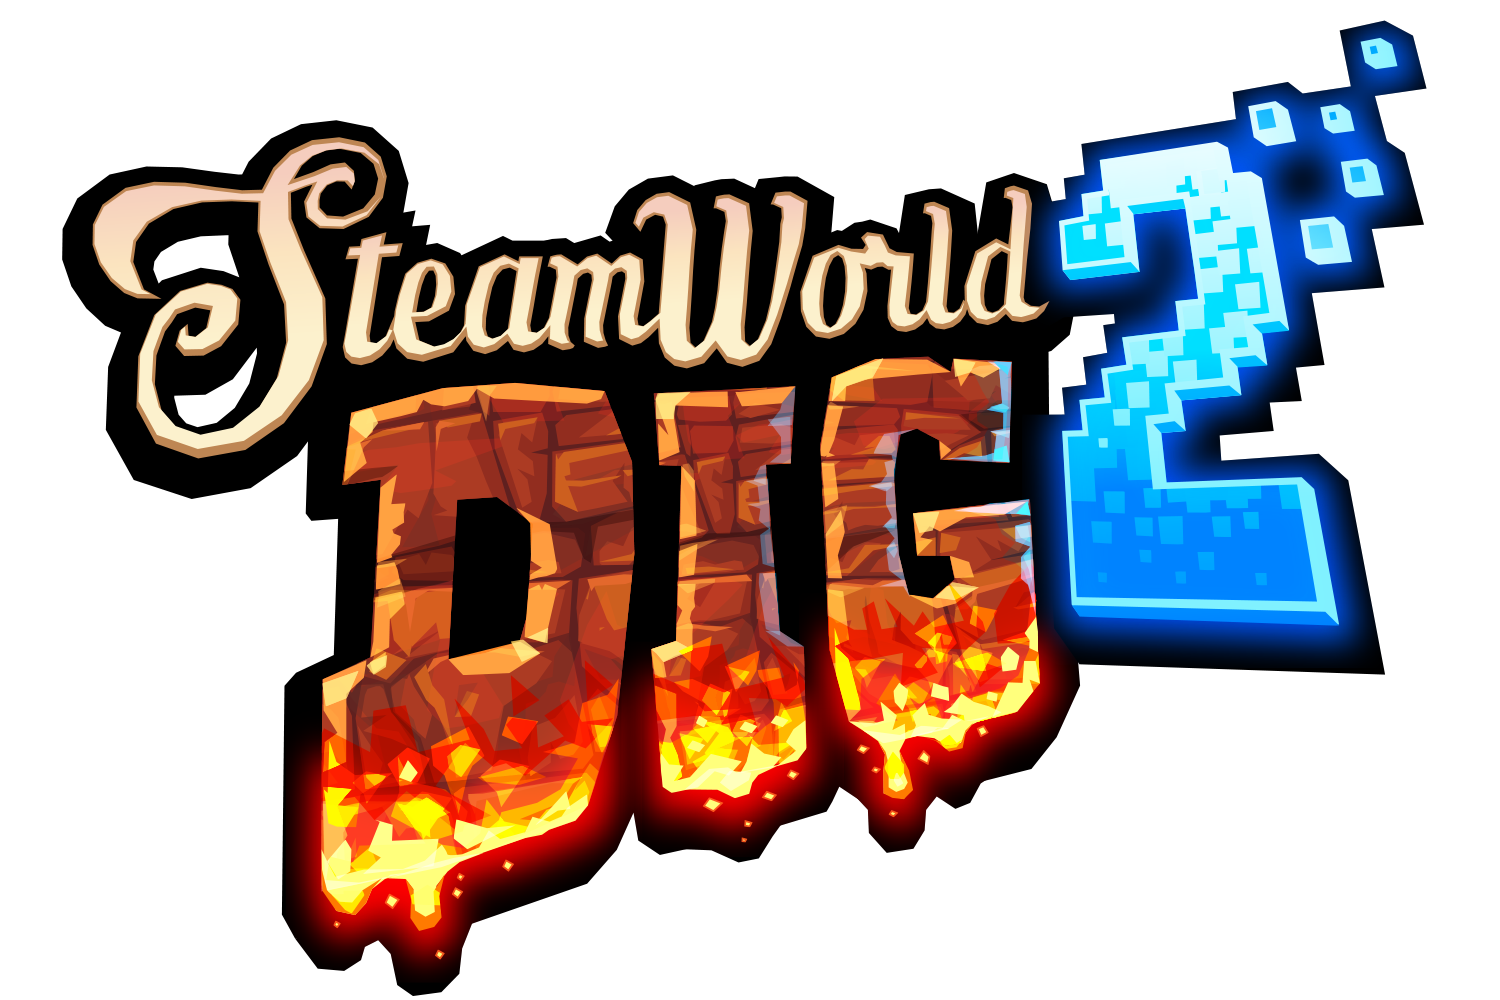 steamworld dig 2 3ds